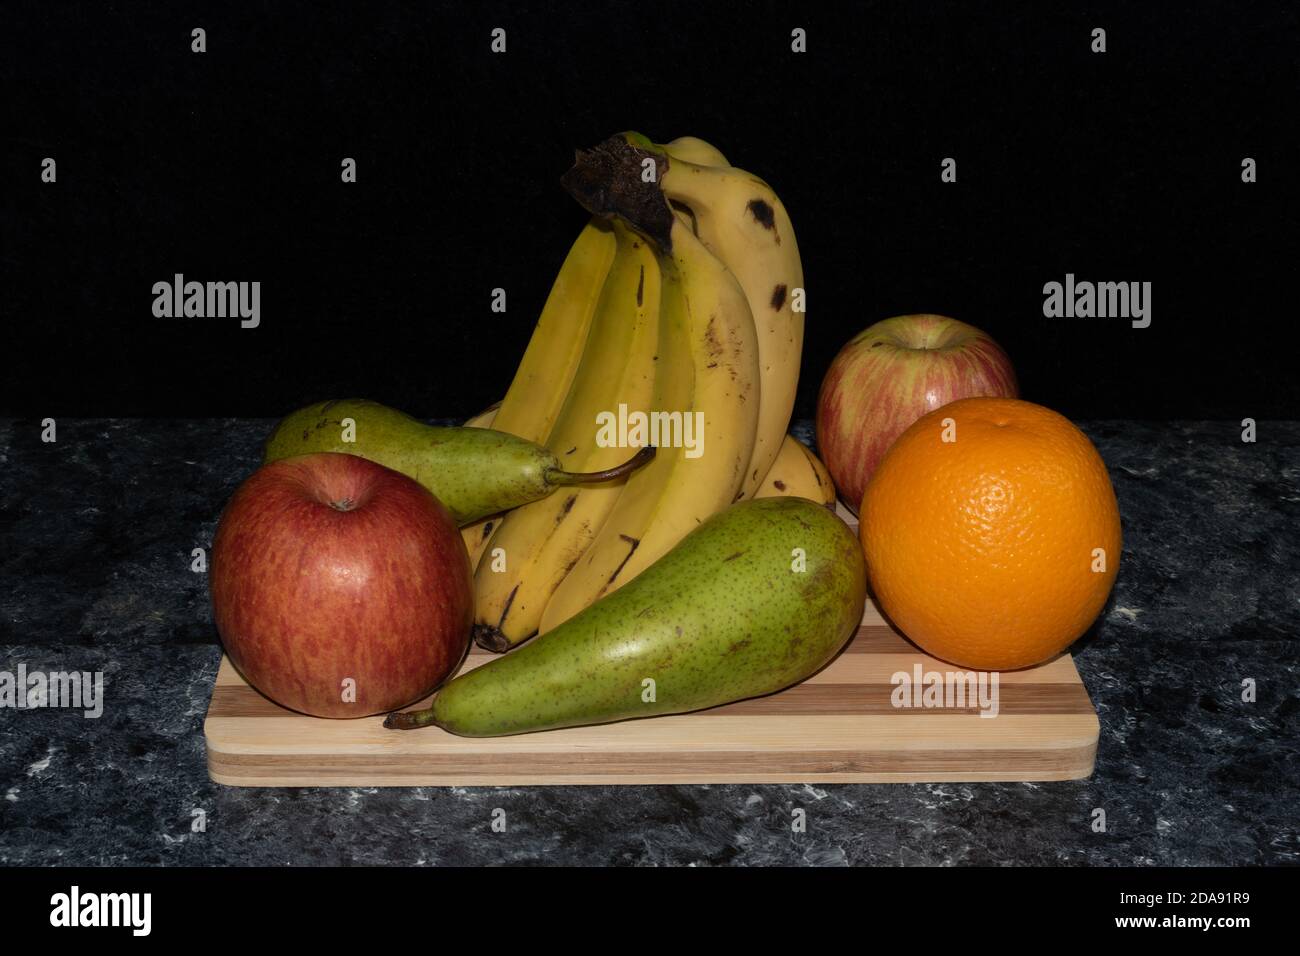 Primer plano de imagen de frutas, plátanos, manzanas peras y naranja colocadas sobre mesa y fondo oscuro Stockfoto